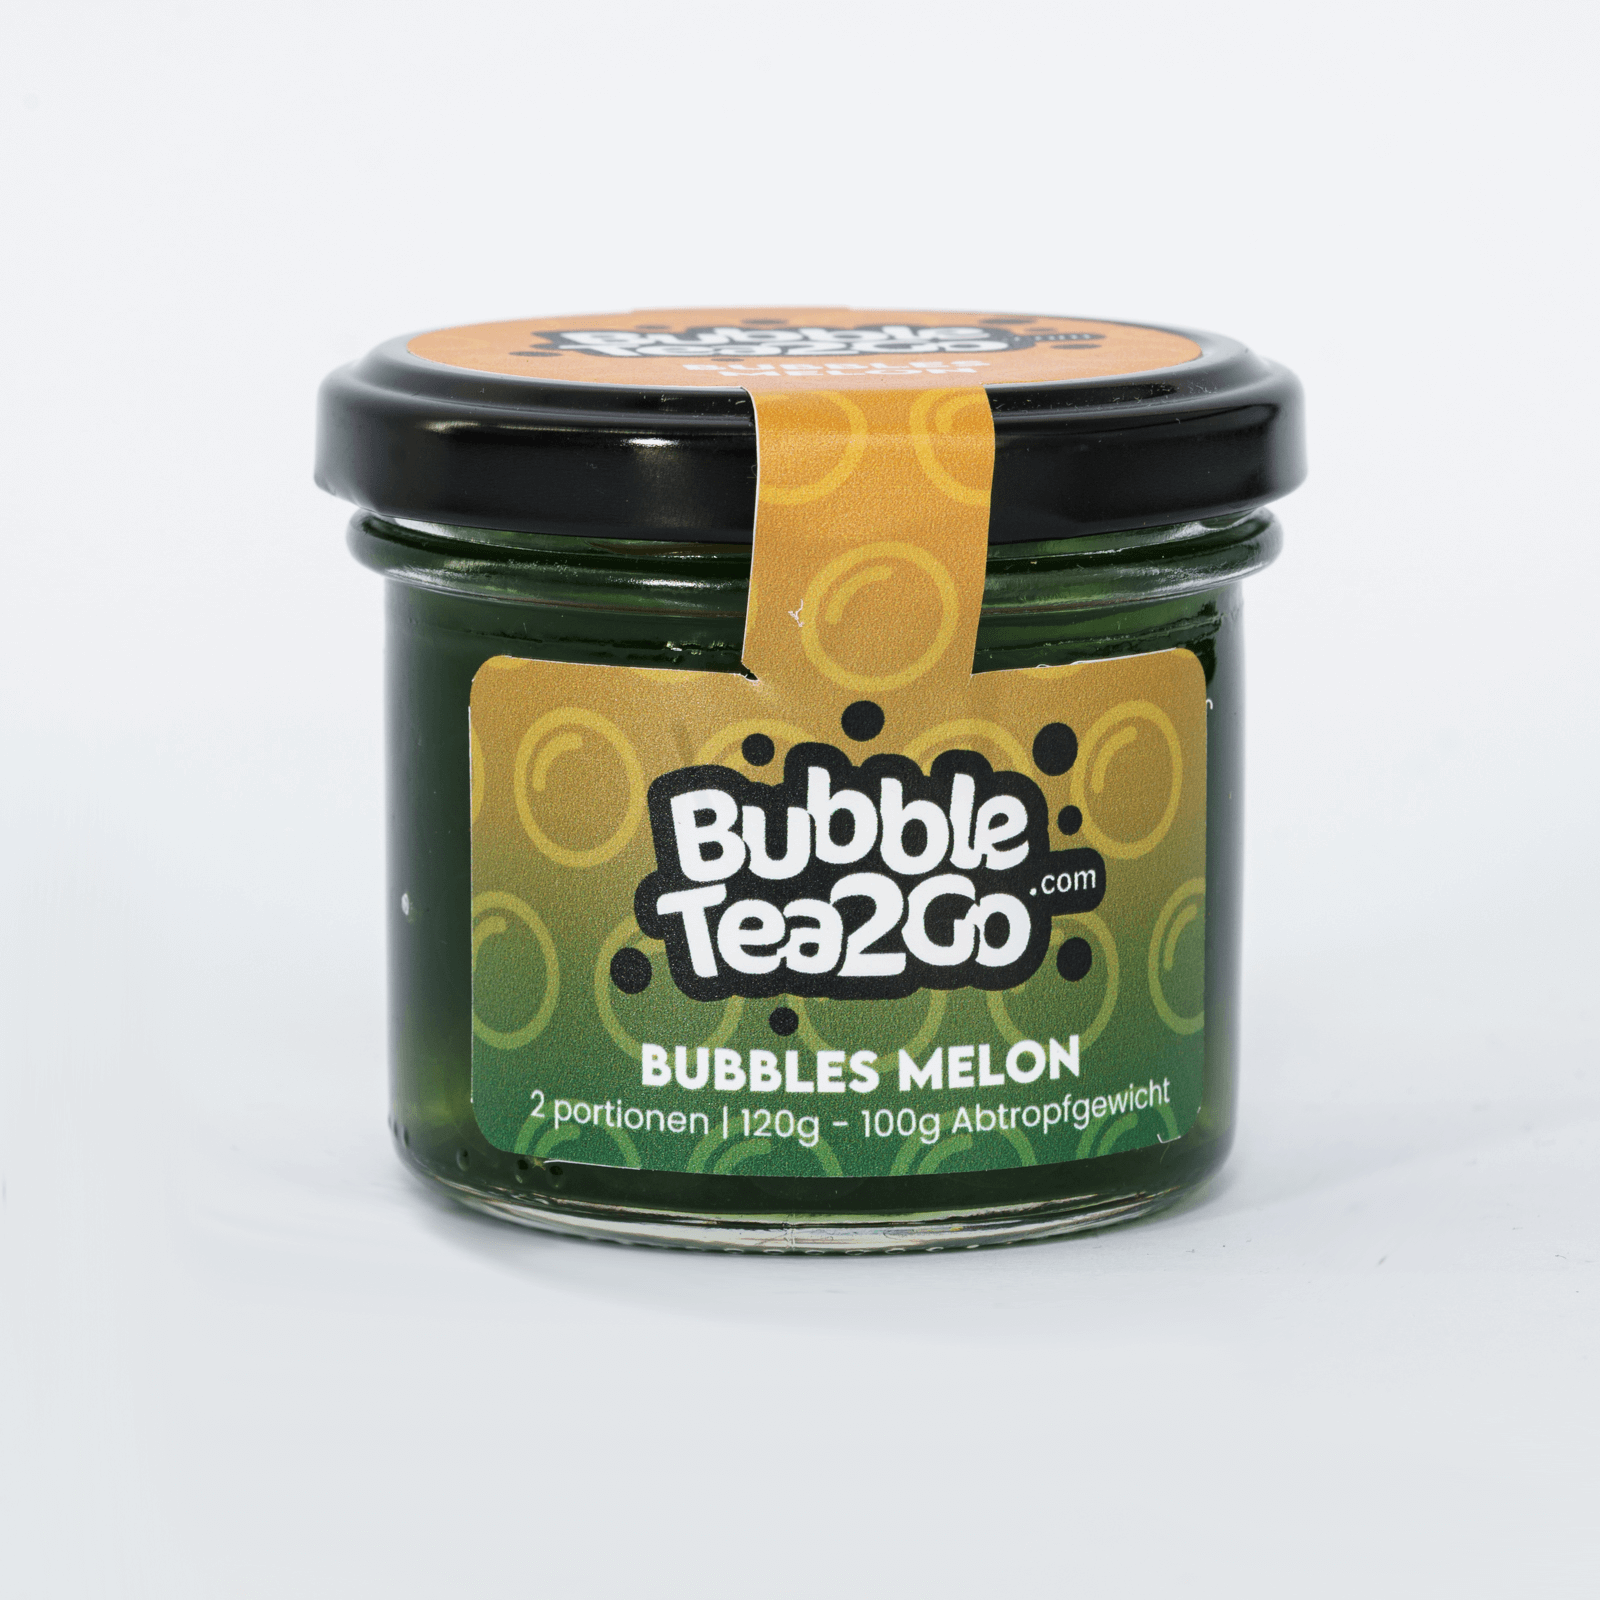 Bubbles - Melon 2 portions (120g)